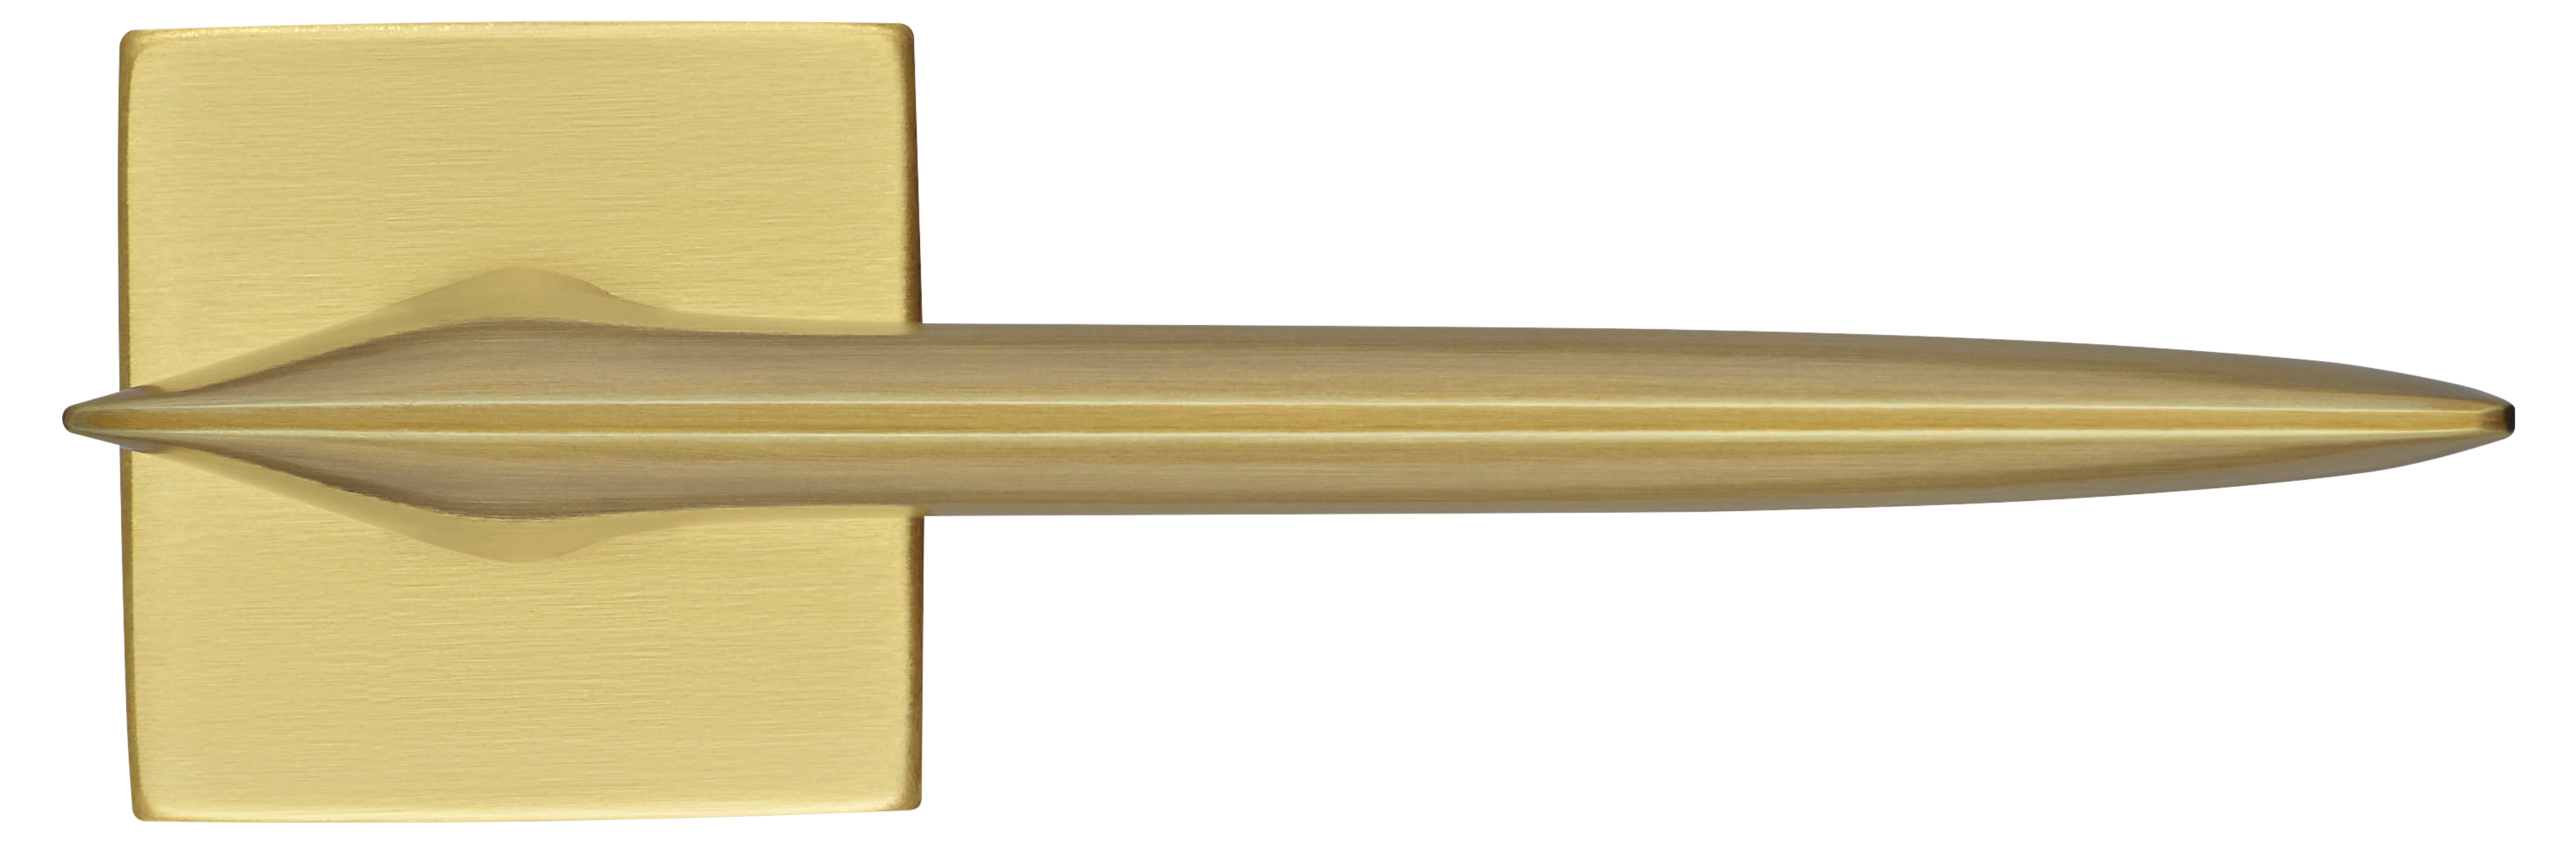 GALACTIC S5 OSA, ручка дверная, цвет -  матовое золото фото купить в Рязани